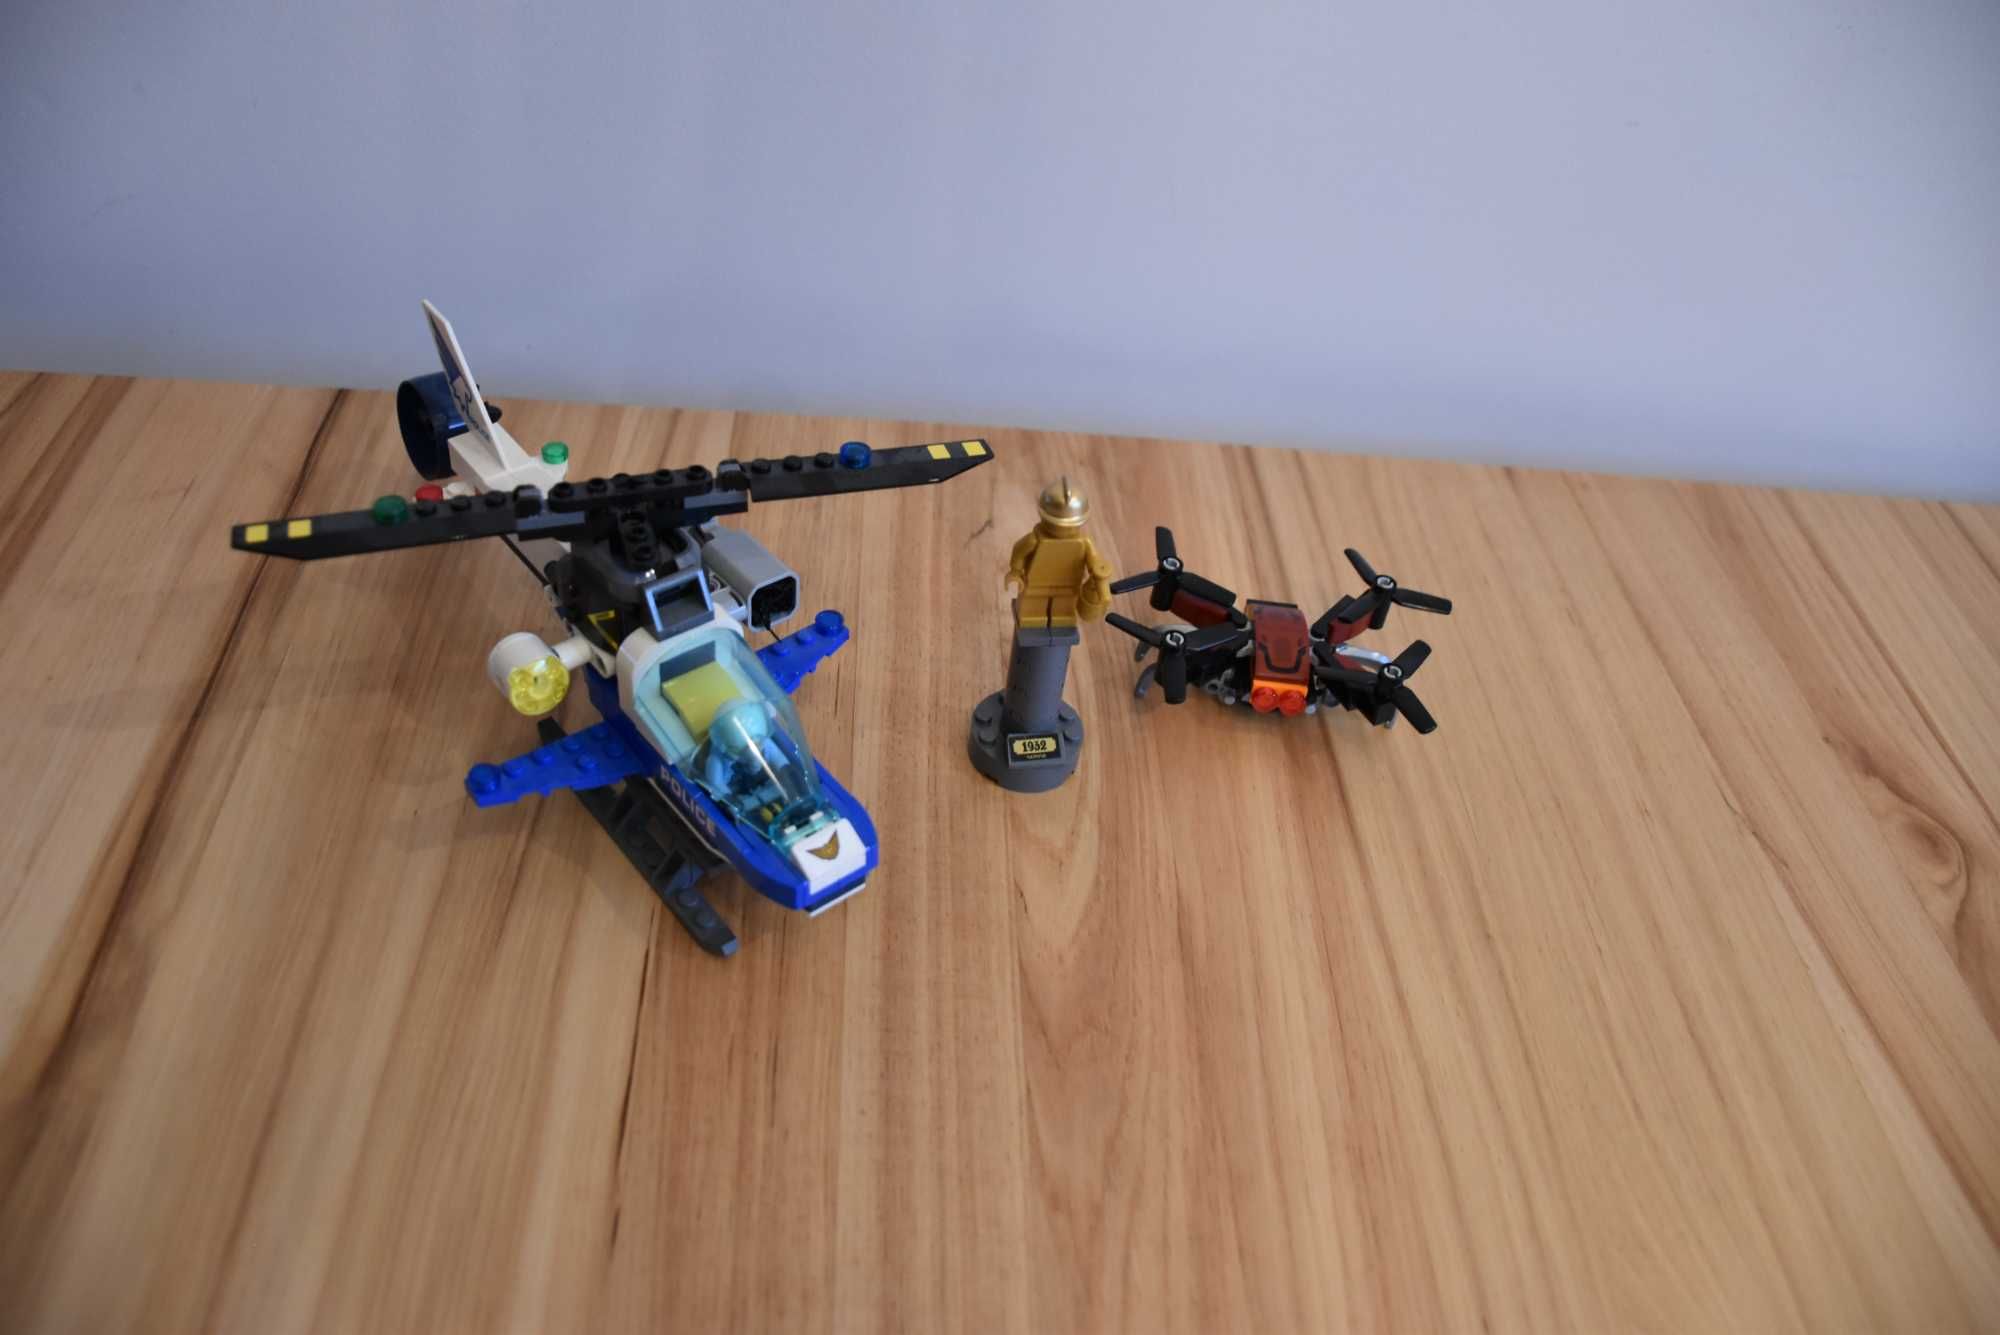 LEGO City 60207 Pościg policyjnym dronem